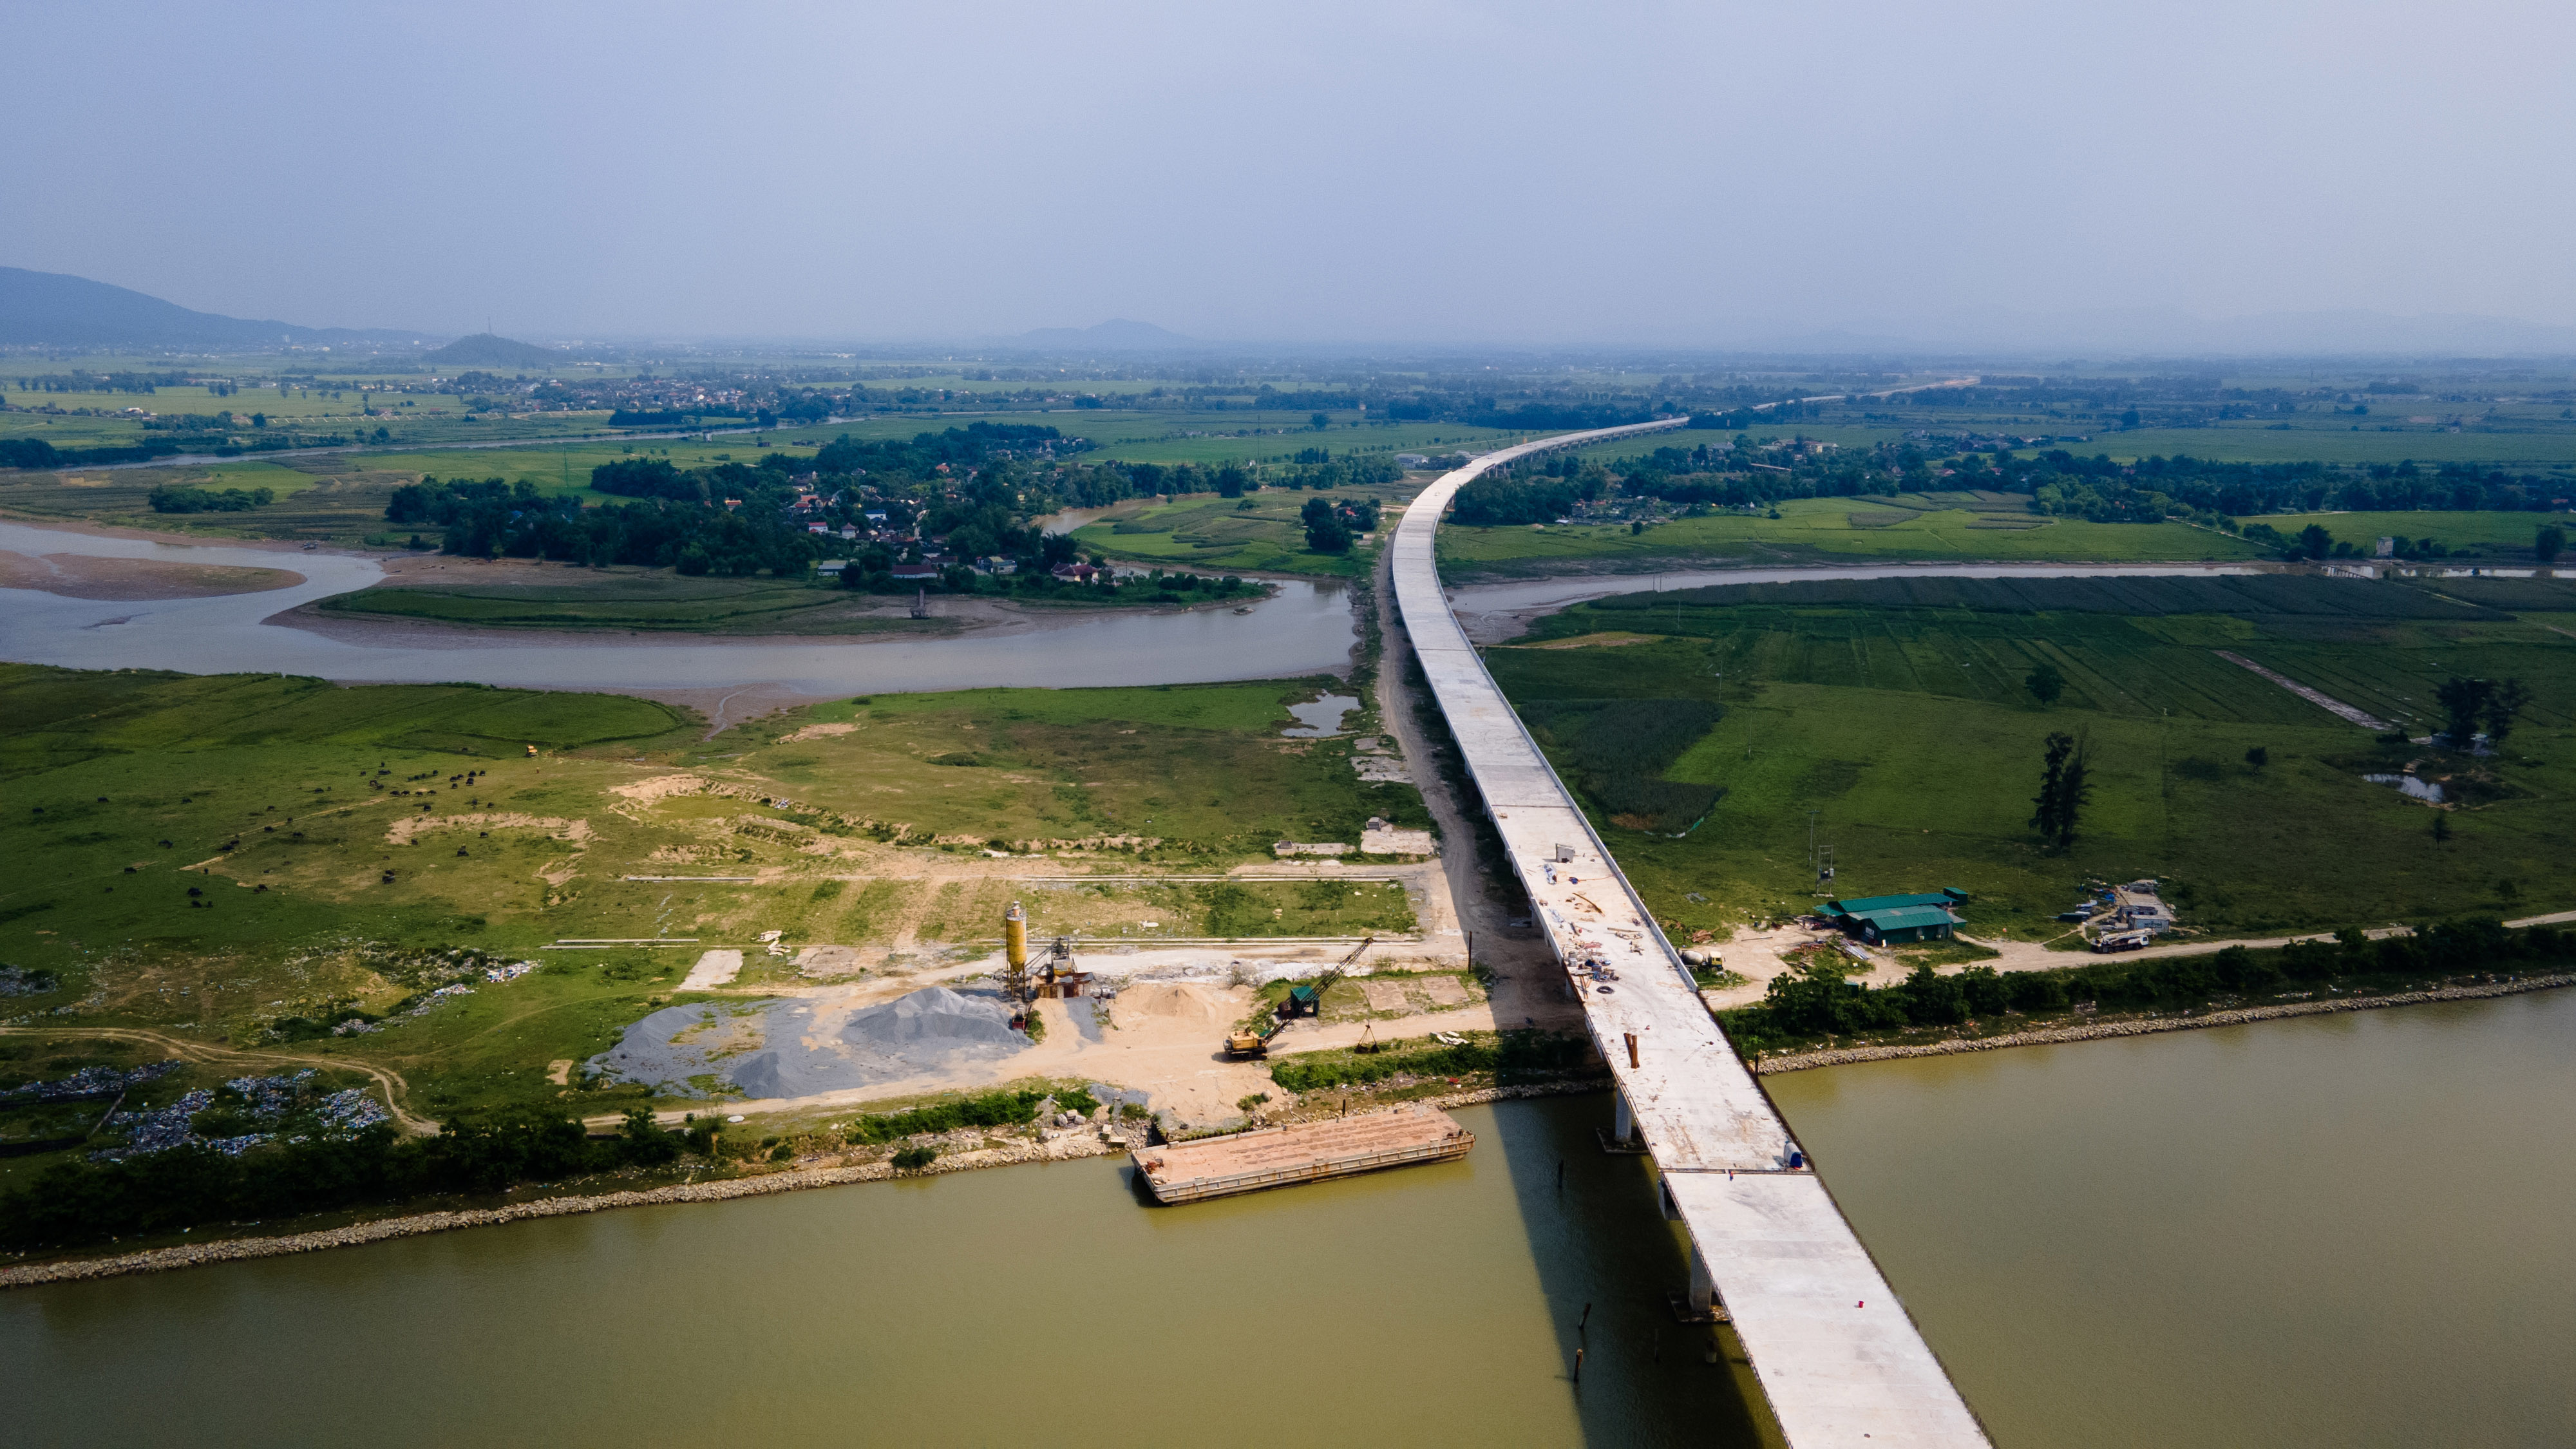 Phía bên huyện Đức Thọ, hơn 2,2 km đường dẫn lên cầu chính đã hoàn thành. Hạng mục này được thiết kế theo kiểu cầu cạn thay vì làm đường.